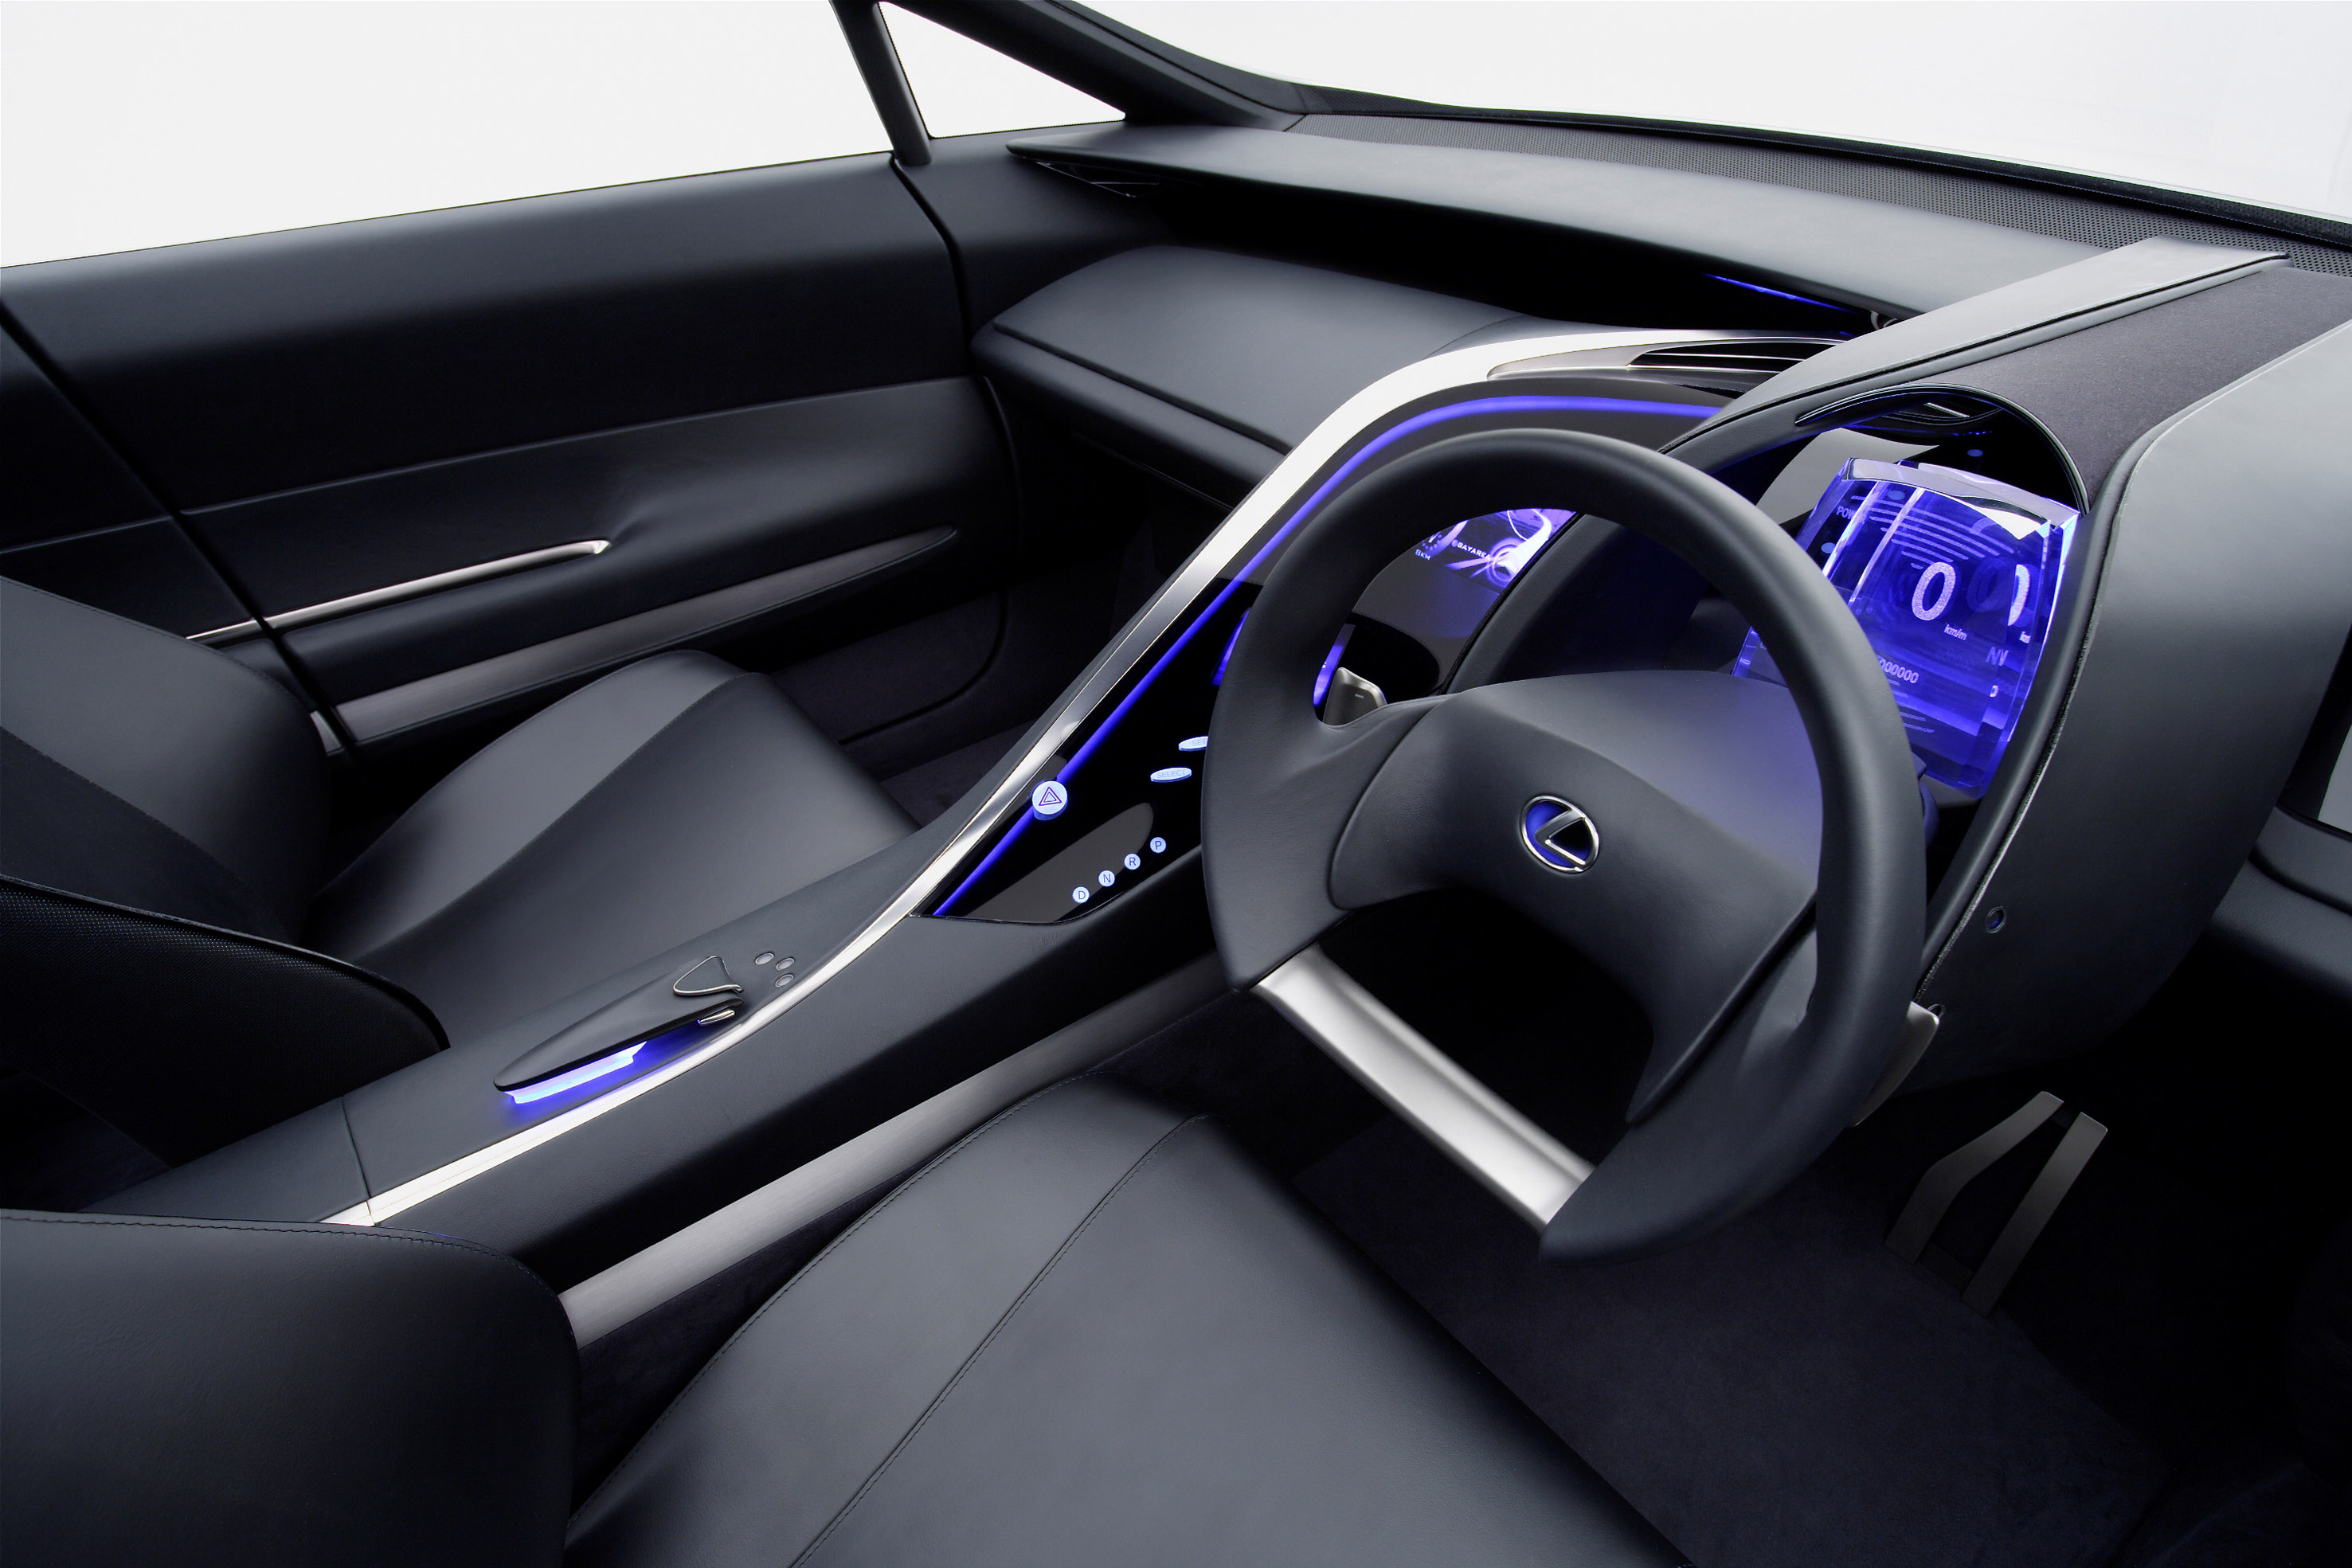 Lexus LF-Xh Hybrid SUV Concept